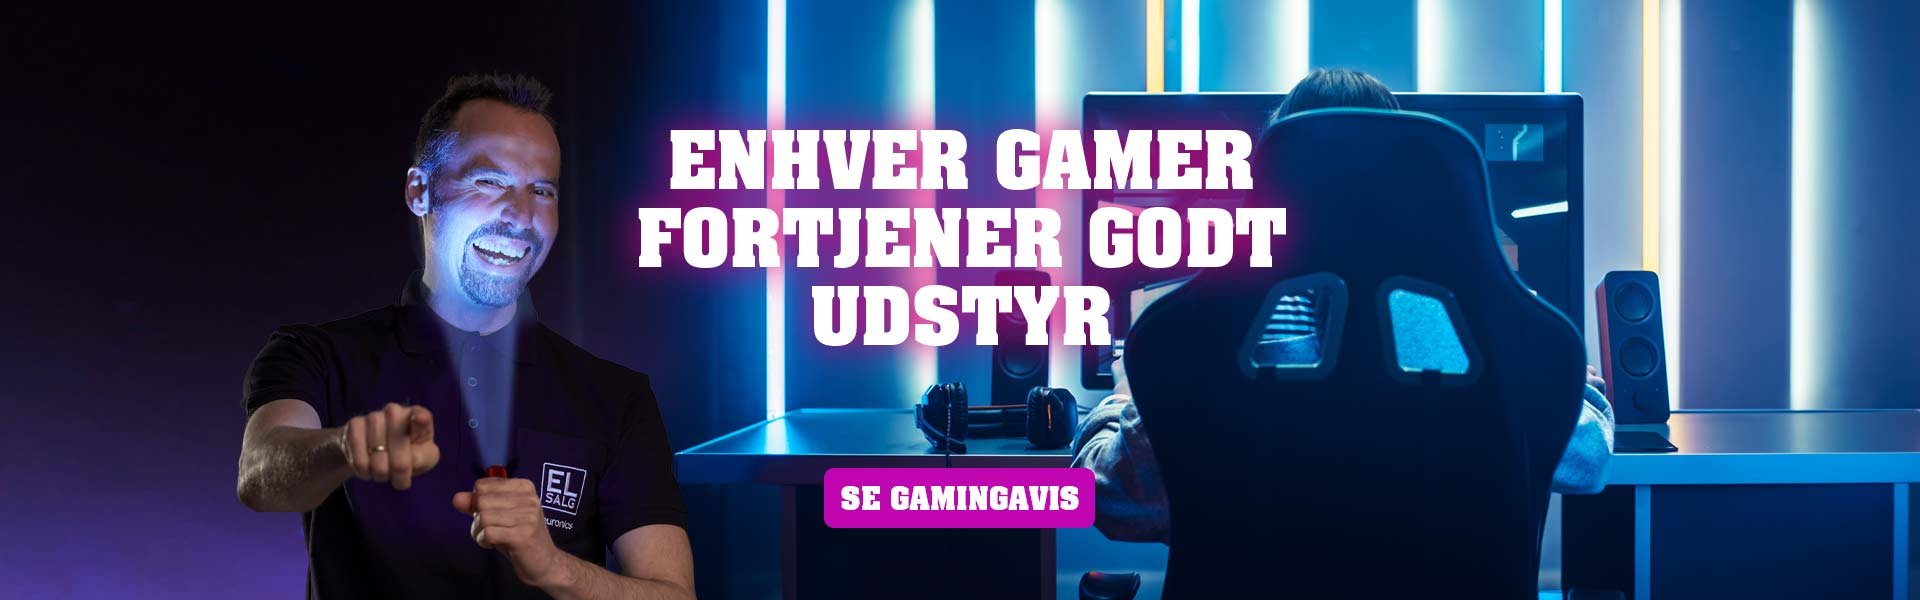 gaming_enhver_gamer_fortjener-1